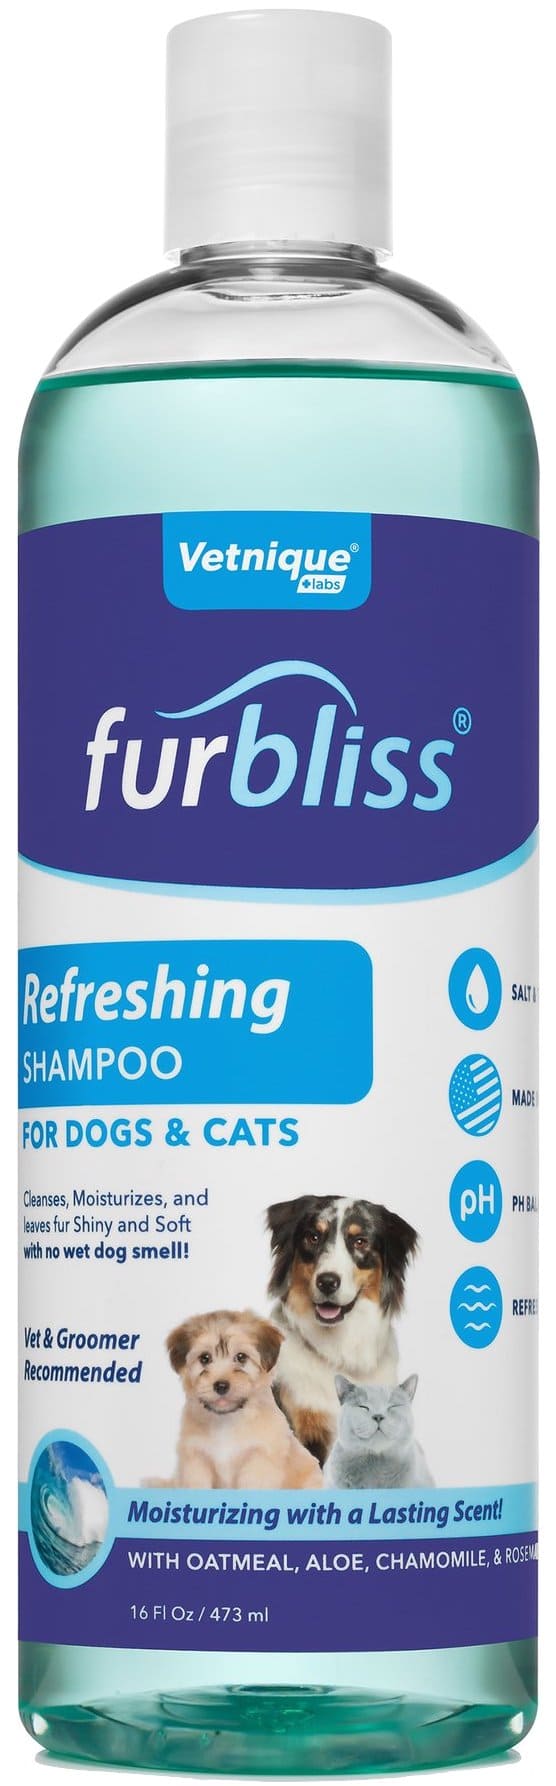 Furbliss Refreshing Shampoo